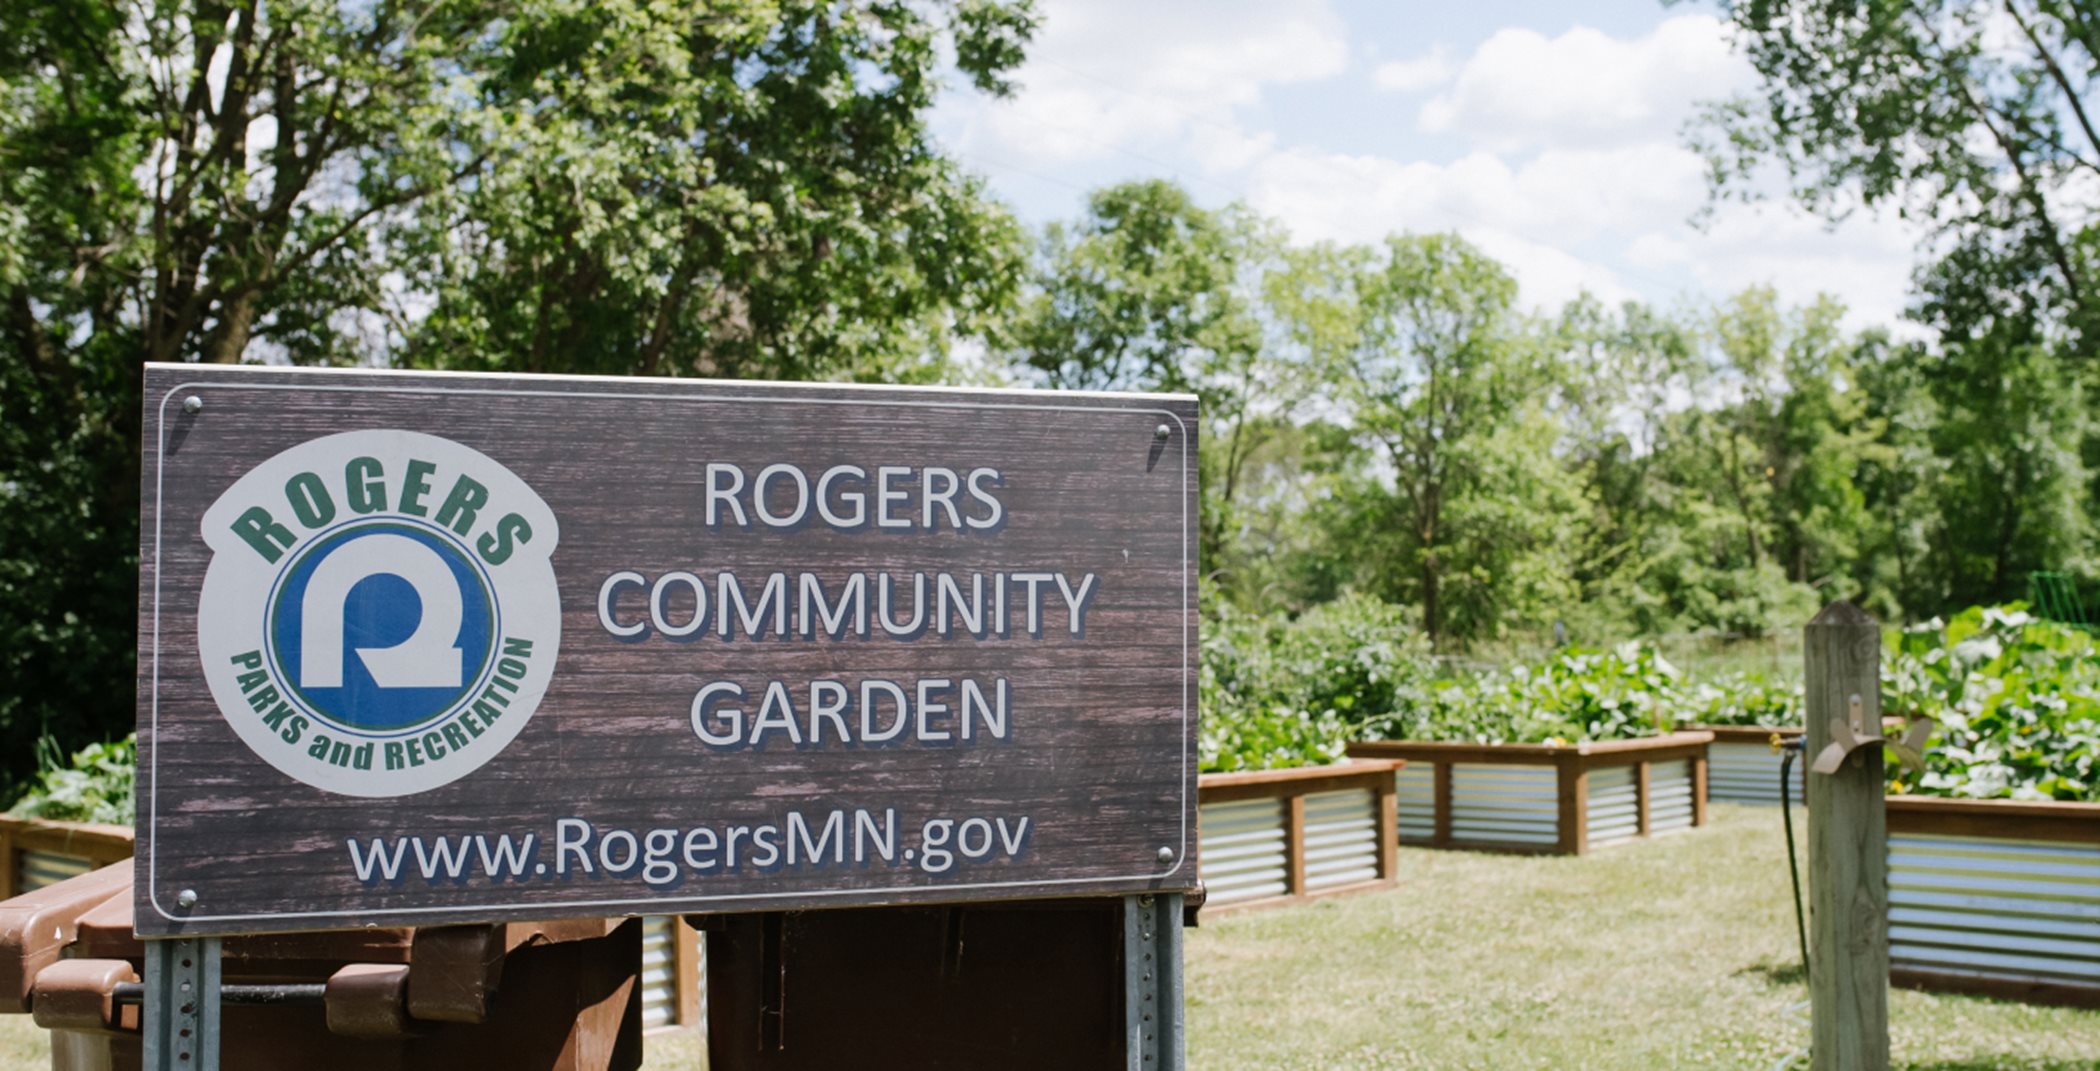 Rogers Community Garden